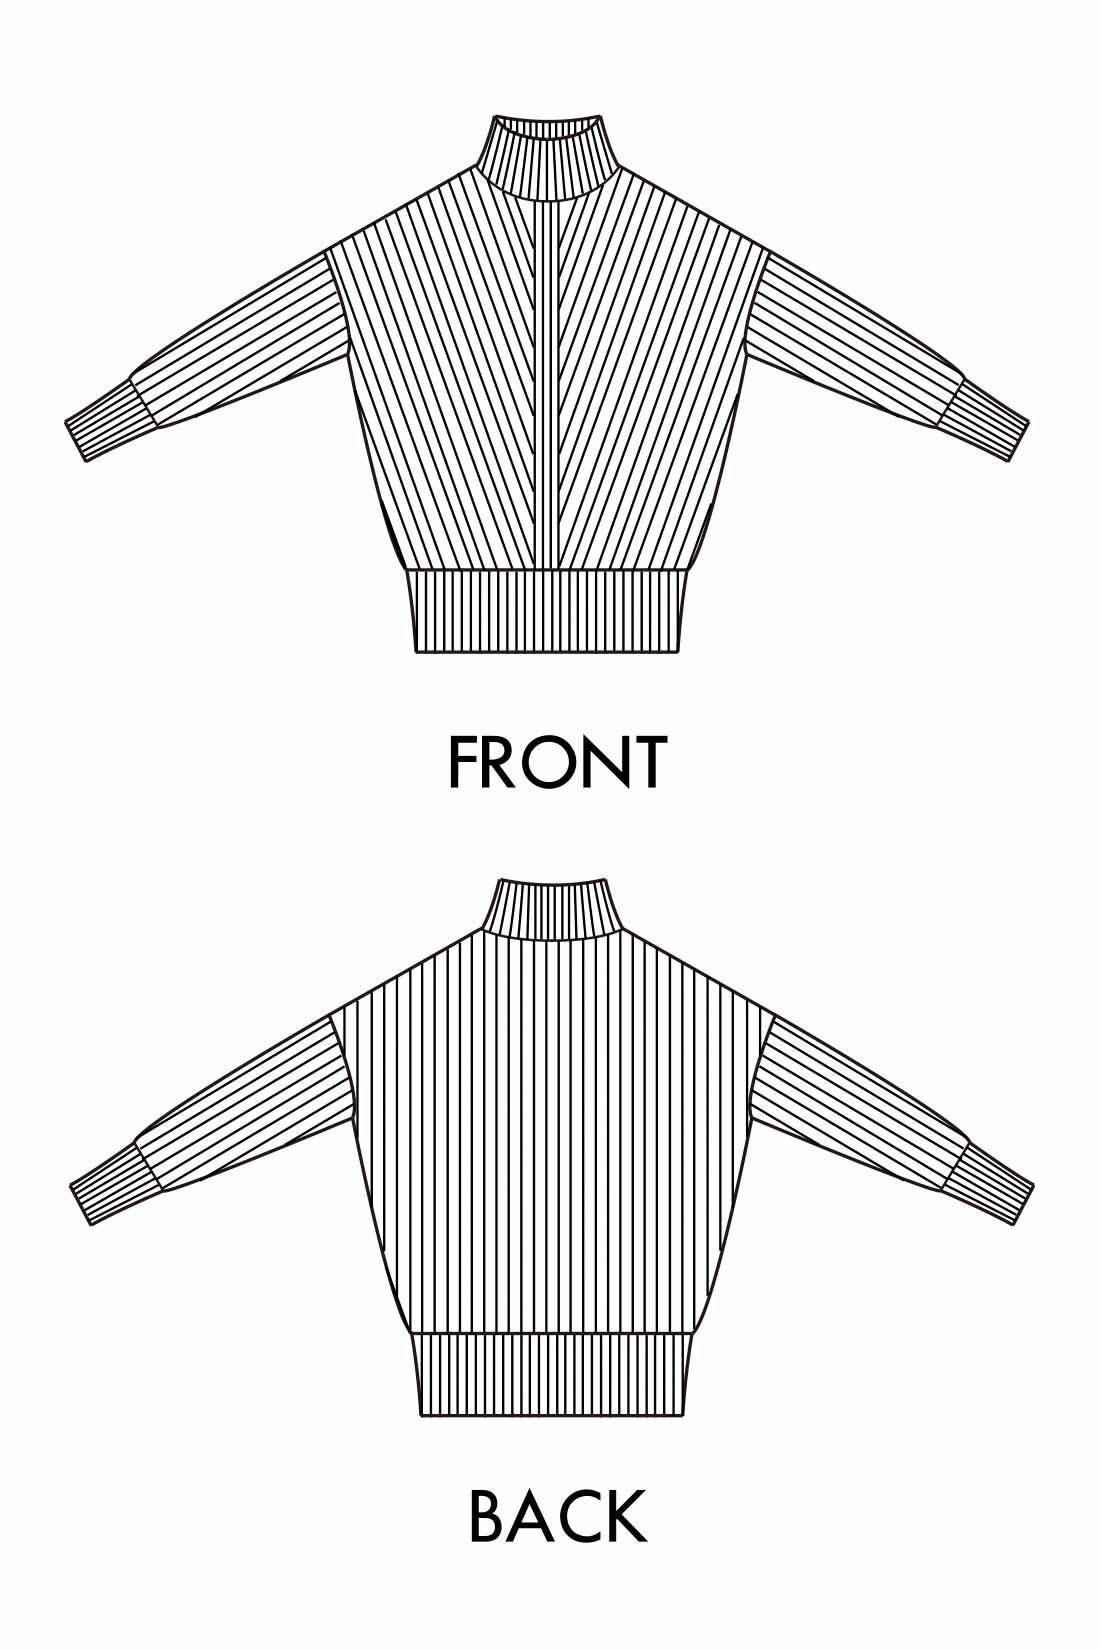 Real Stock|IEDIT[イディット]　V字の編み柄遣いで細見せ マシンウォッシャブルがうれしい アルパカ混素材のニットチュニック〈グリーン〉|大きすぎないシルエットで華奢見えを演出。背面と袖はシンプルな編み地ですっきり。